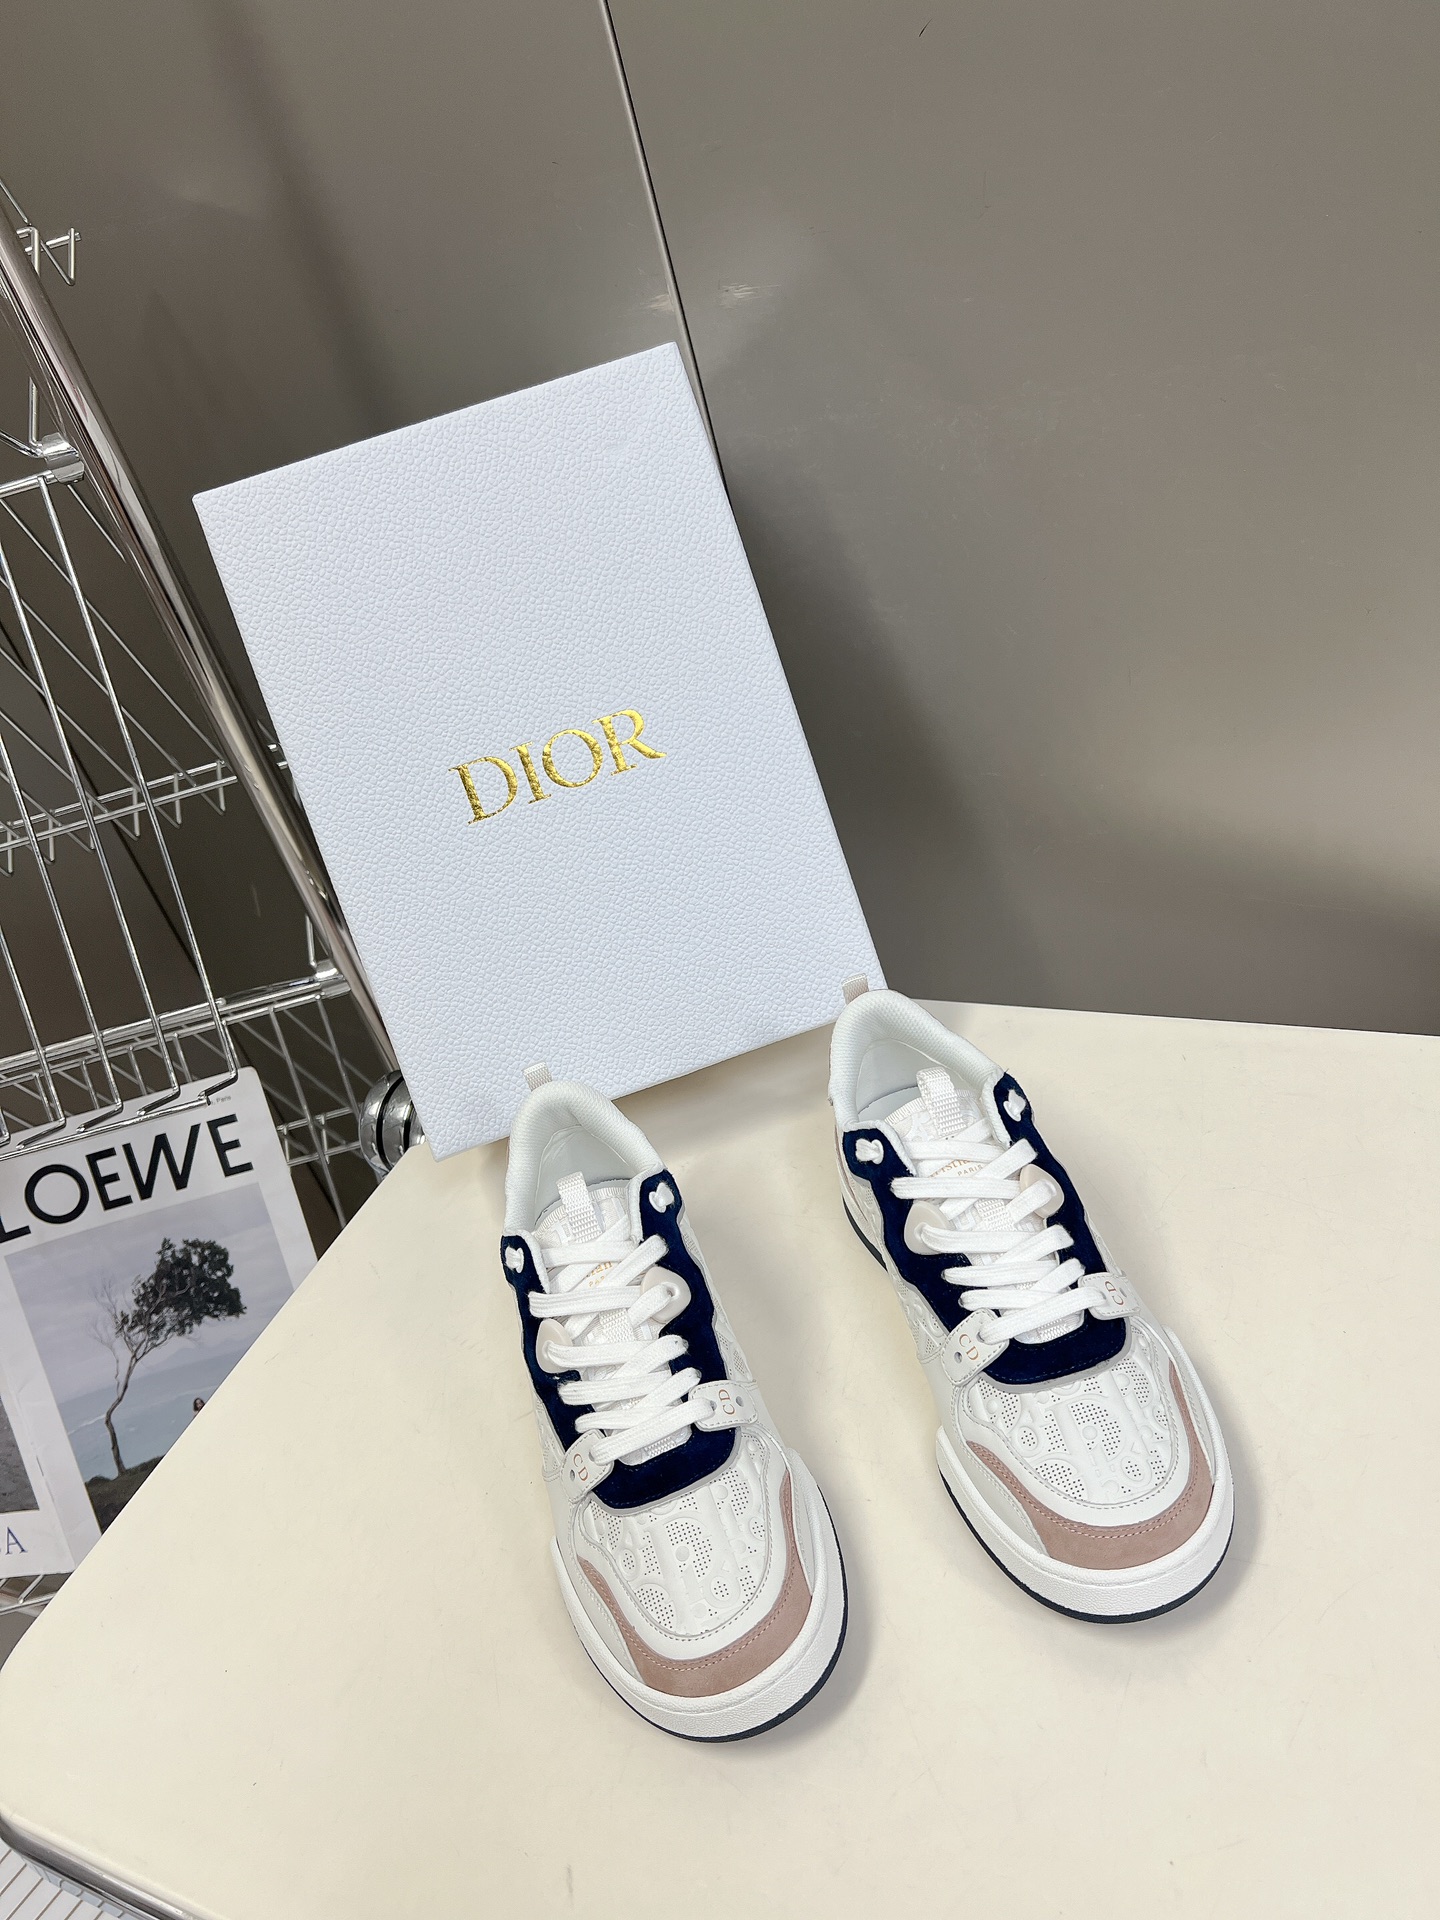 Dior迪奥春夏走秀款运动鞋情侣款一眼就爱上的小白鞋经典百搭四季皆宜可与各式服装搭配采用白色印花小牛皮革